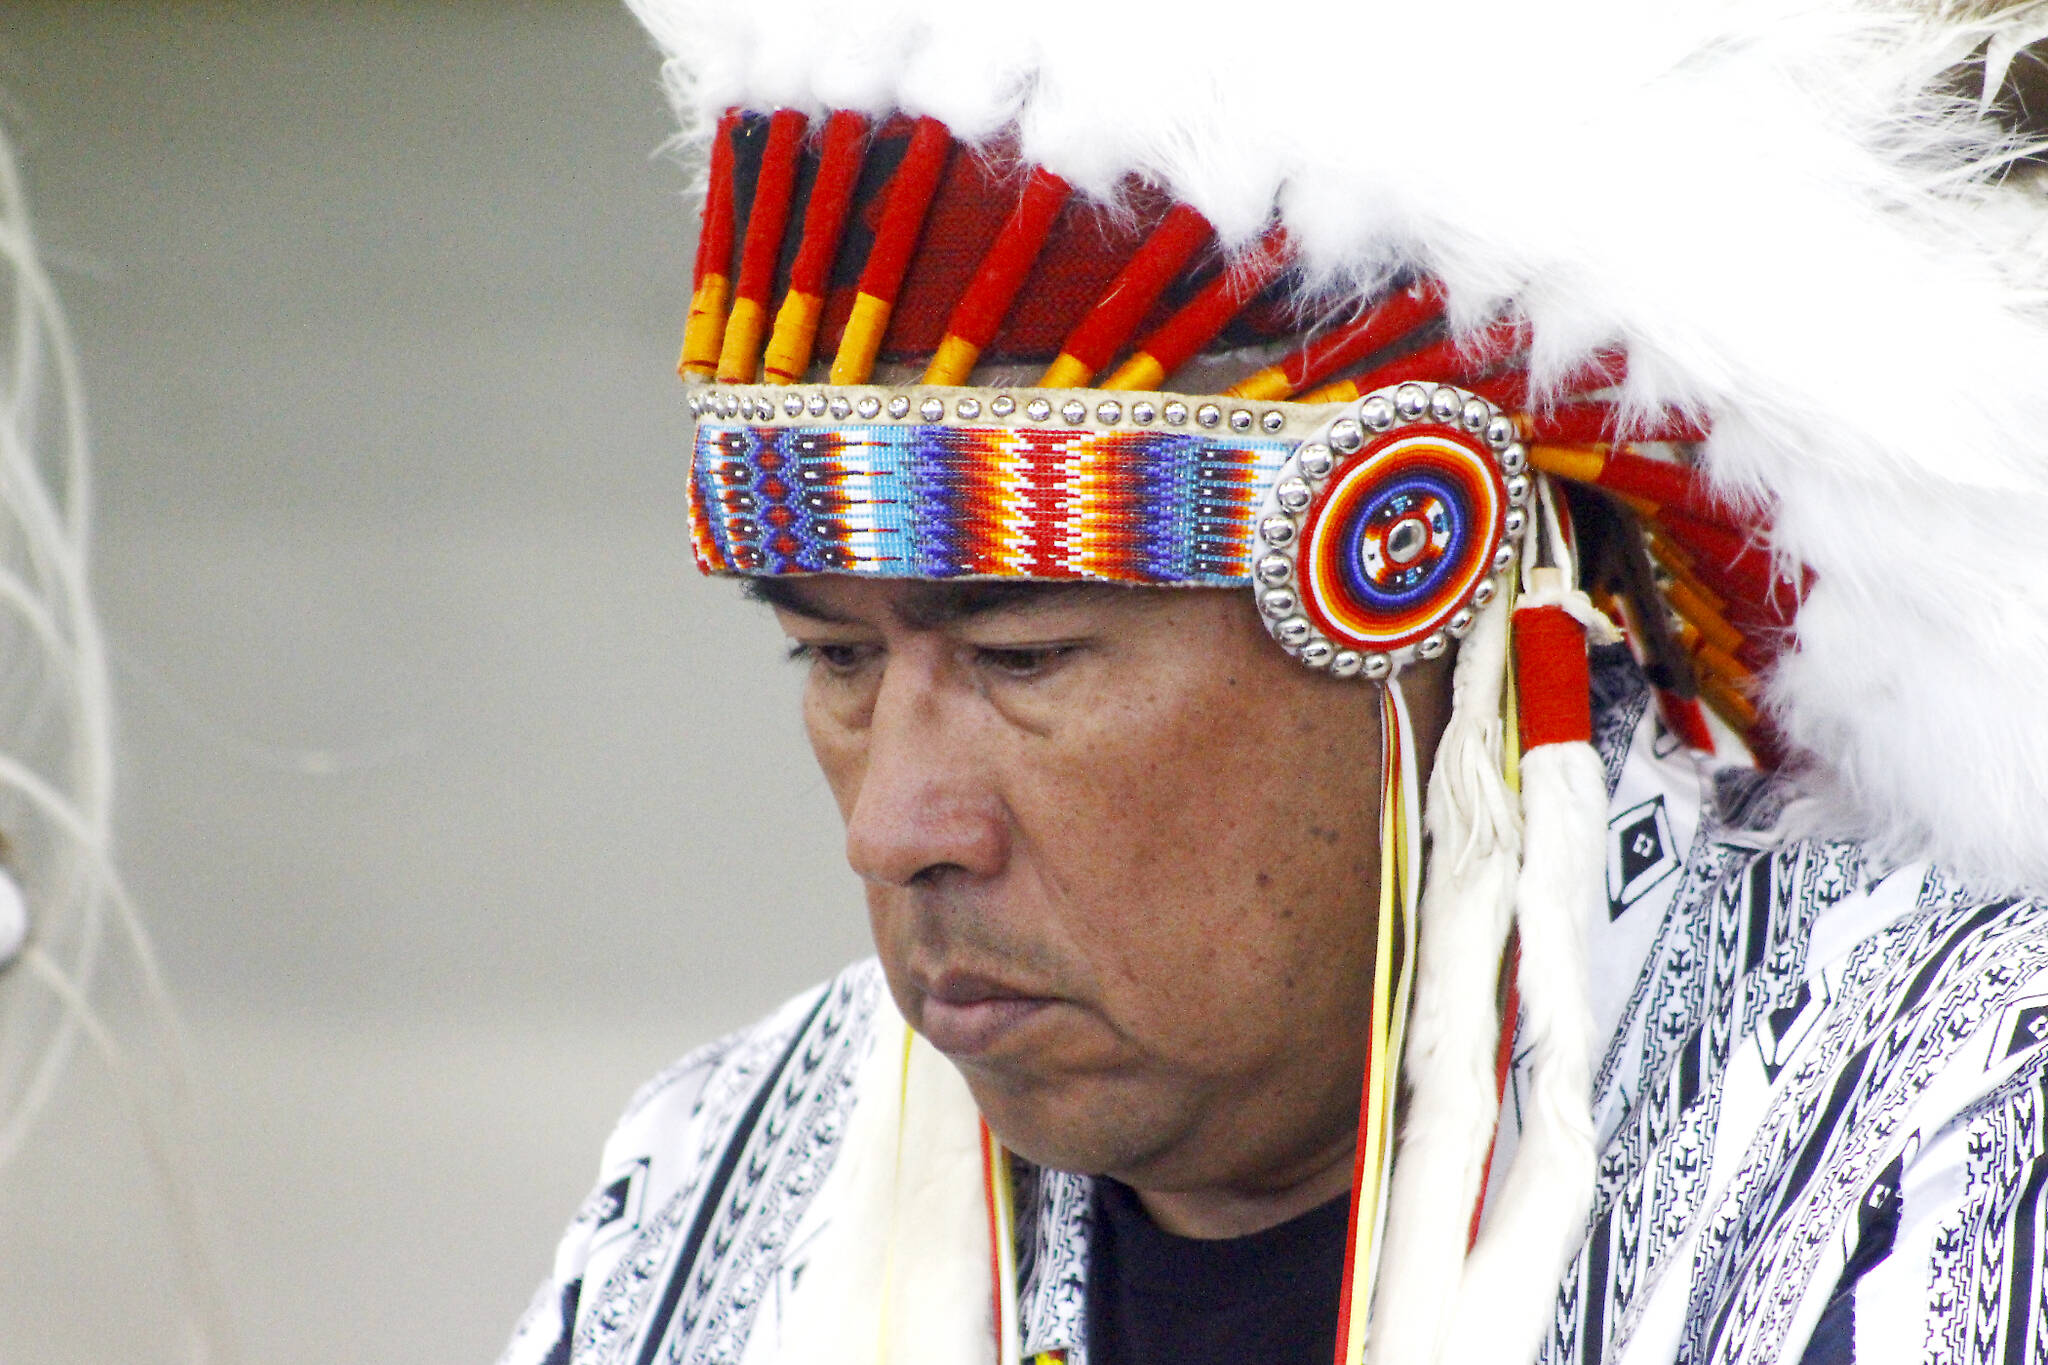 Samson Cree Nation Chief Vernon Saddleback. (Emily Jaycox/Ponoka News)